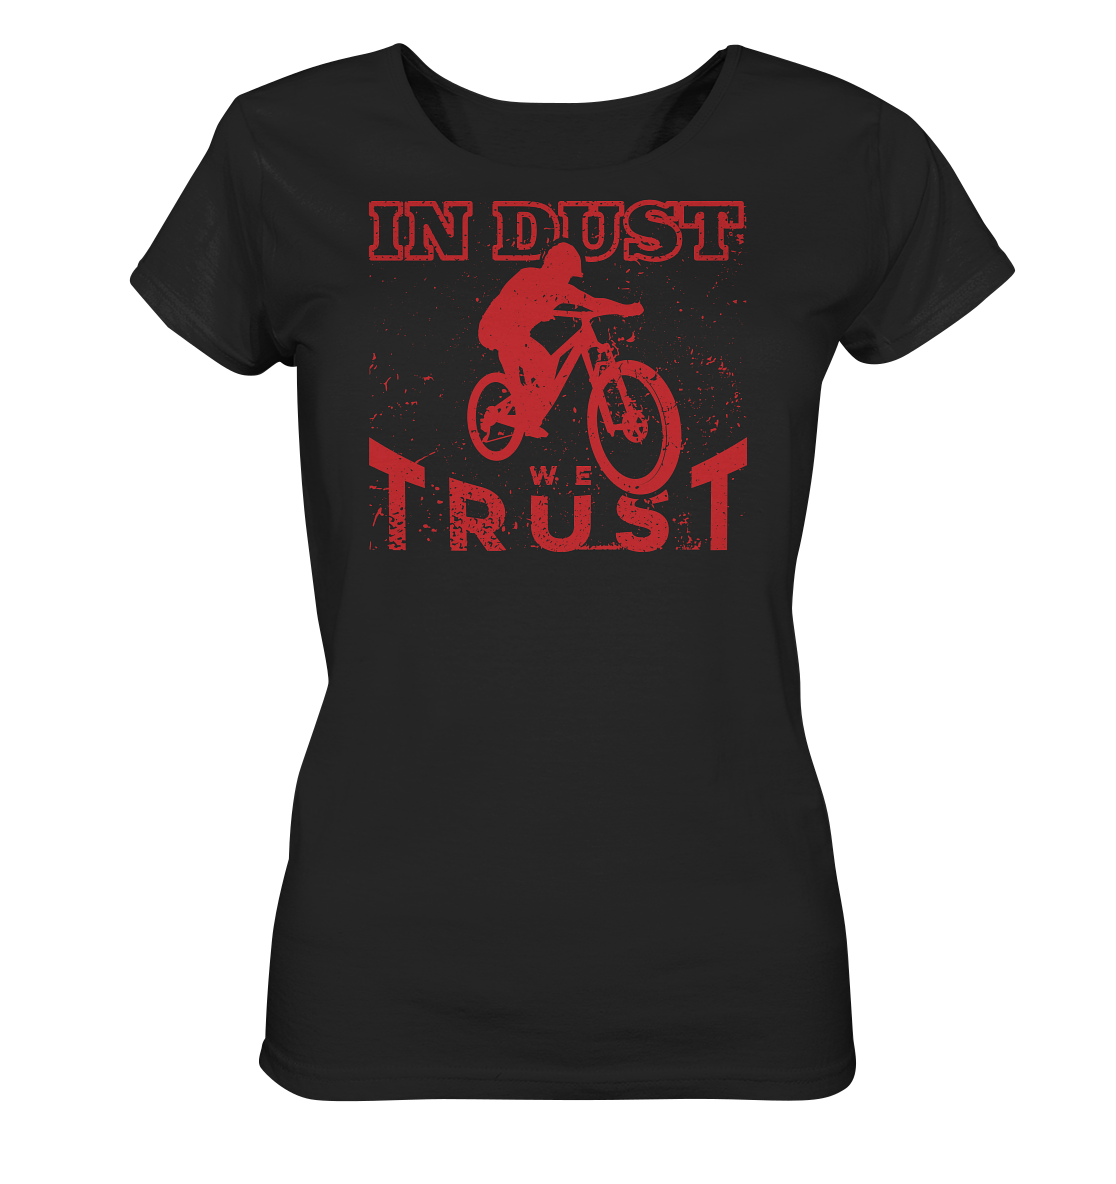 In dust we trust - Ladies Organic Shirt